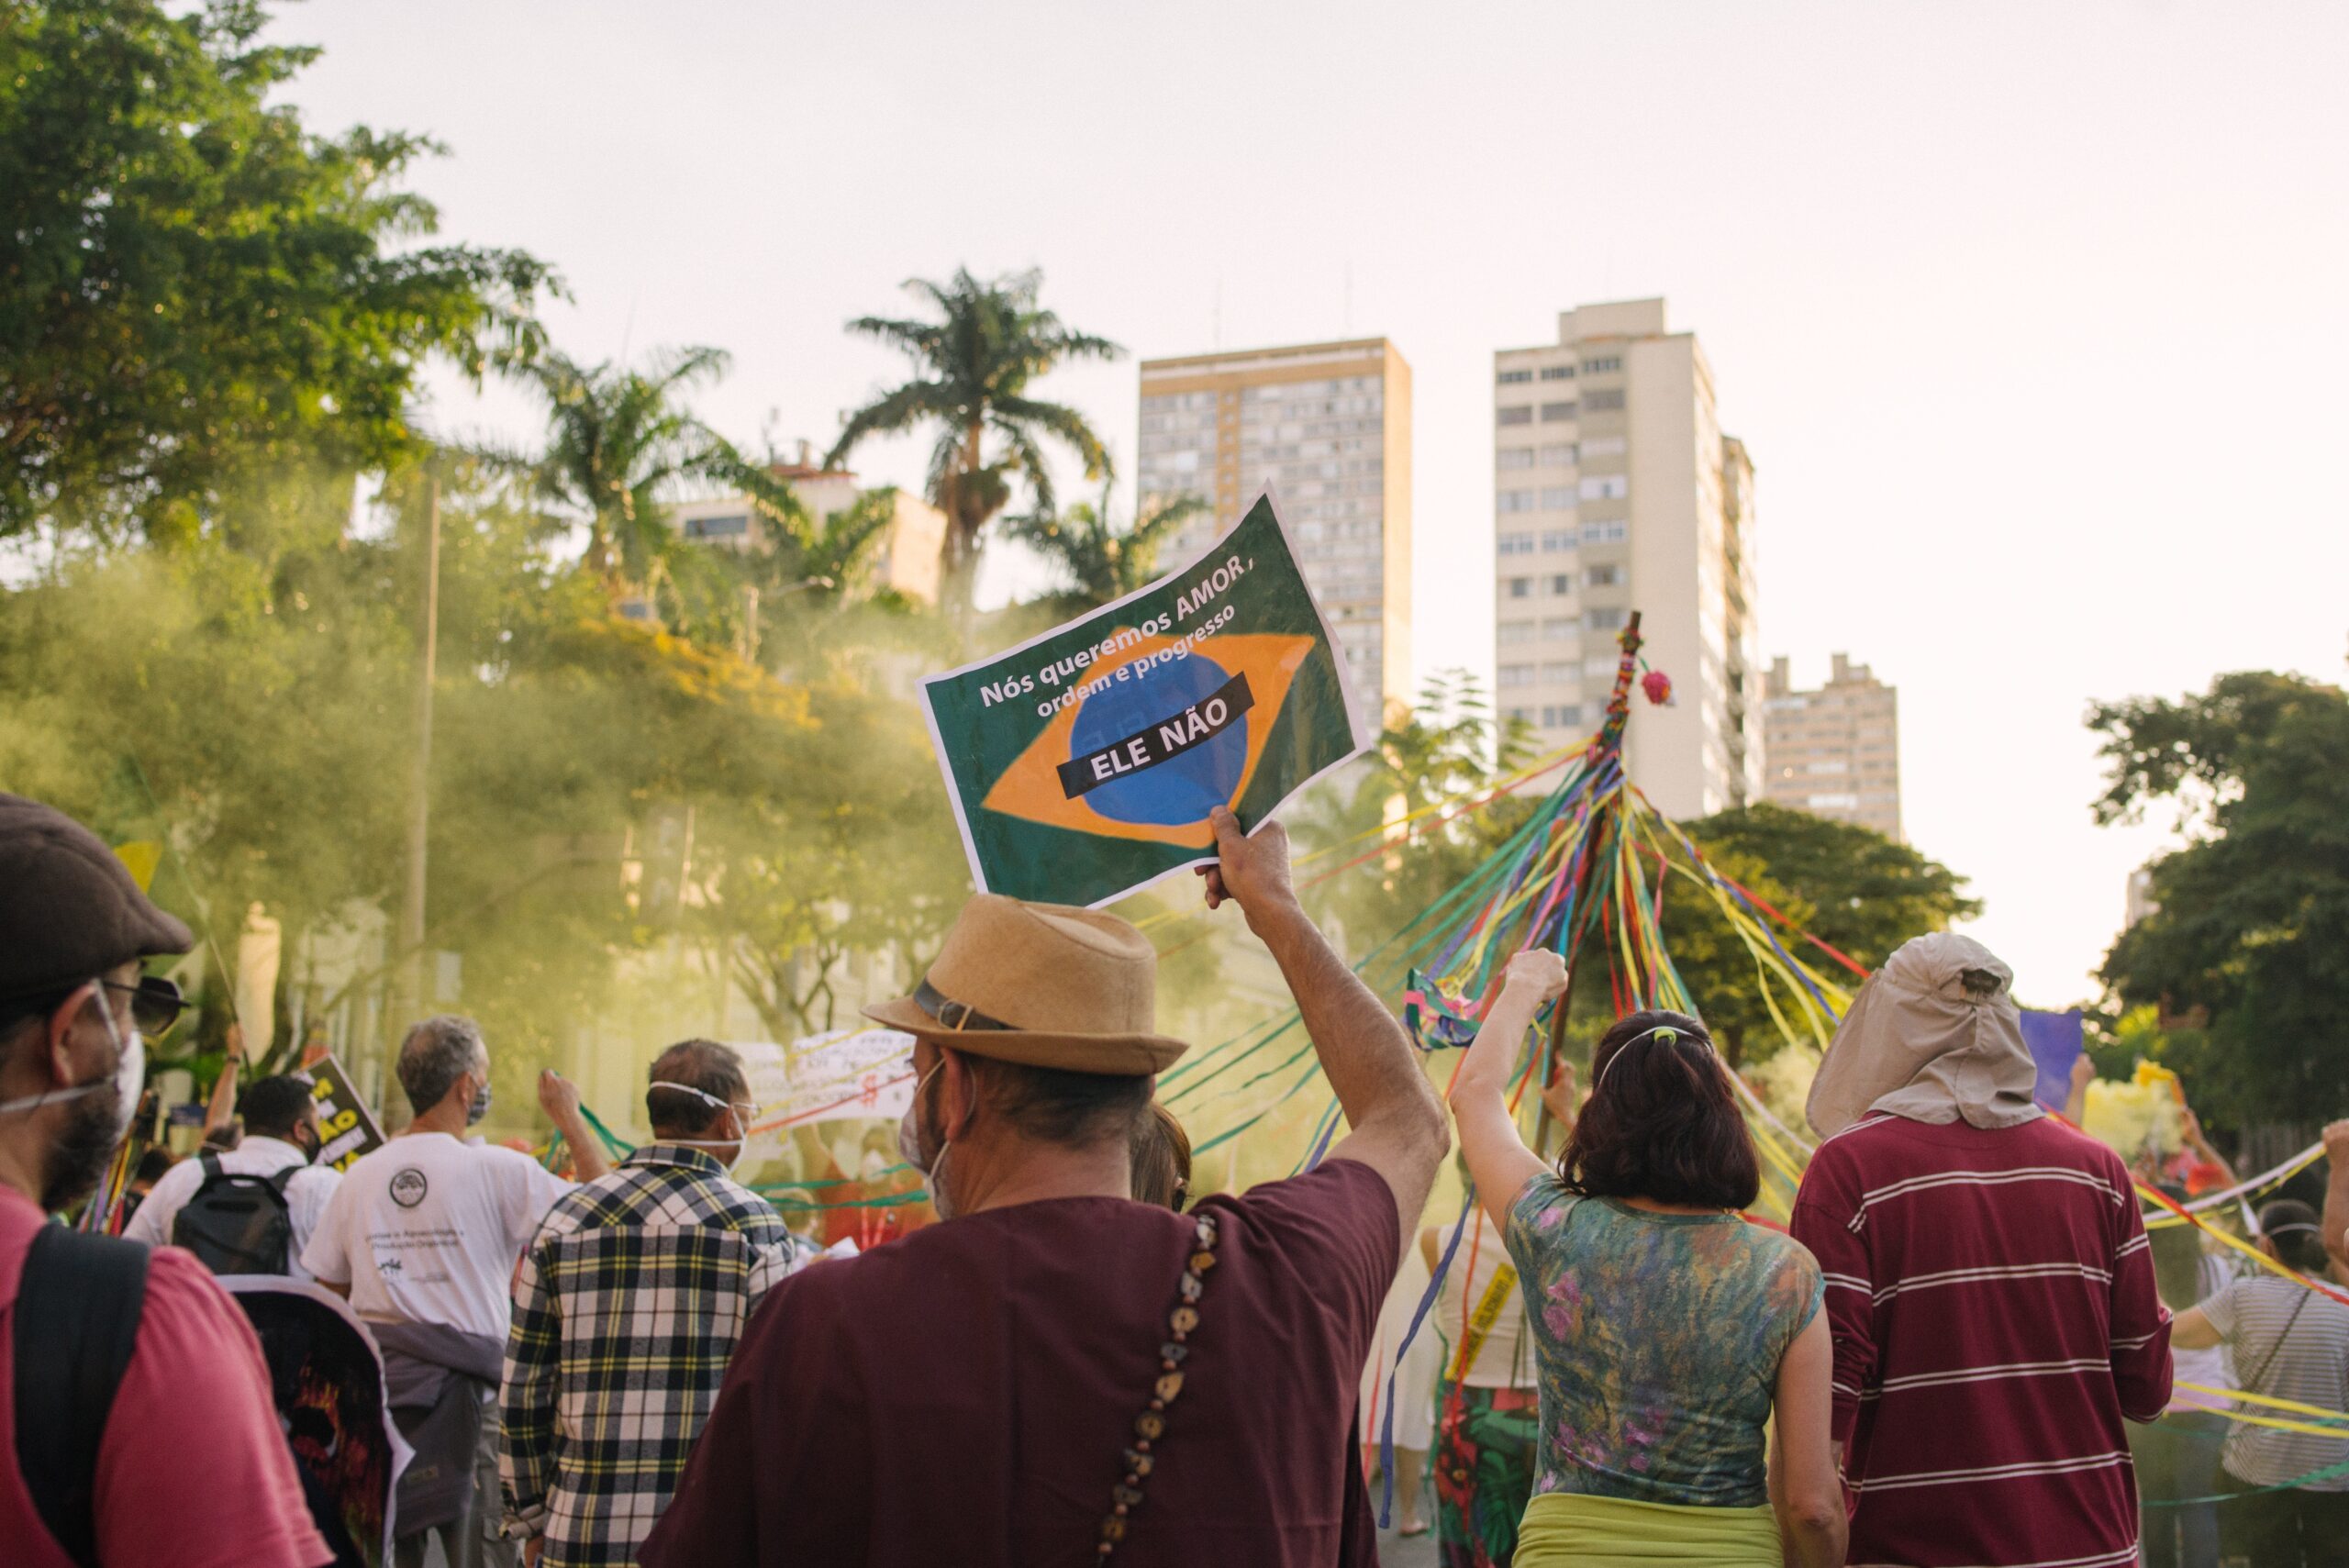 Em manifestação em Belo Horizonte, homem levanta cartaz escrito "ele não".